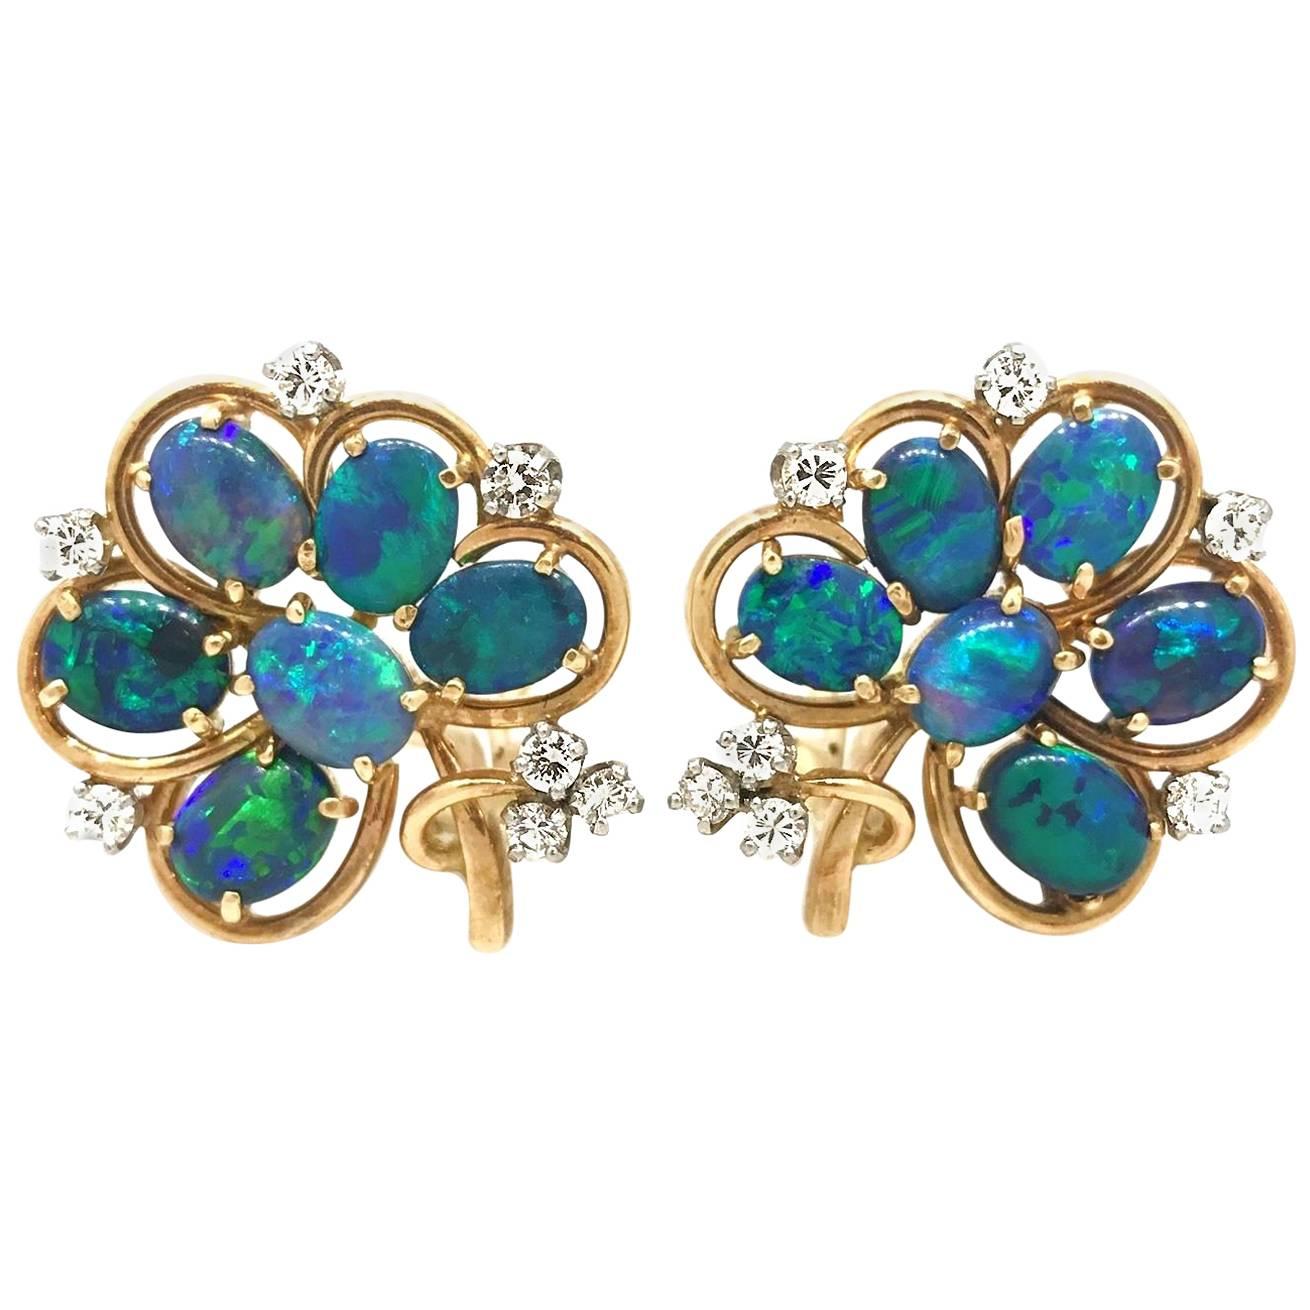 Vintage Black Opal Flower Earrings with Diamonds in 14 Karat Yellow Gold